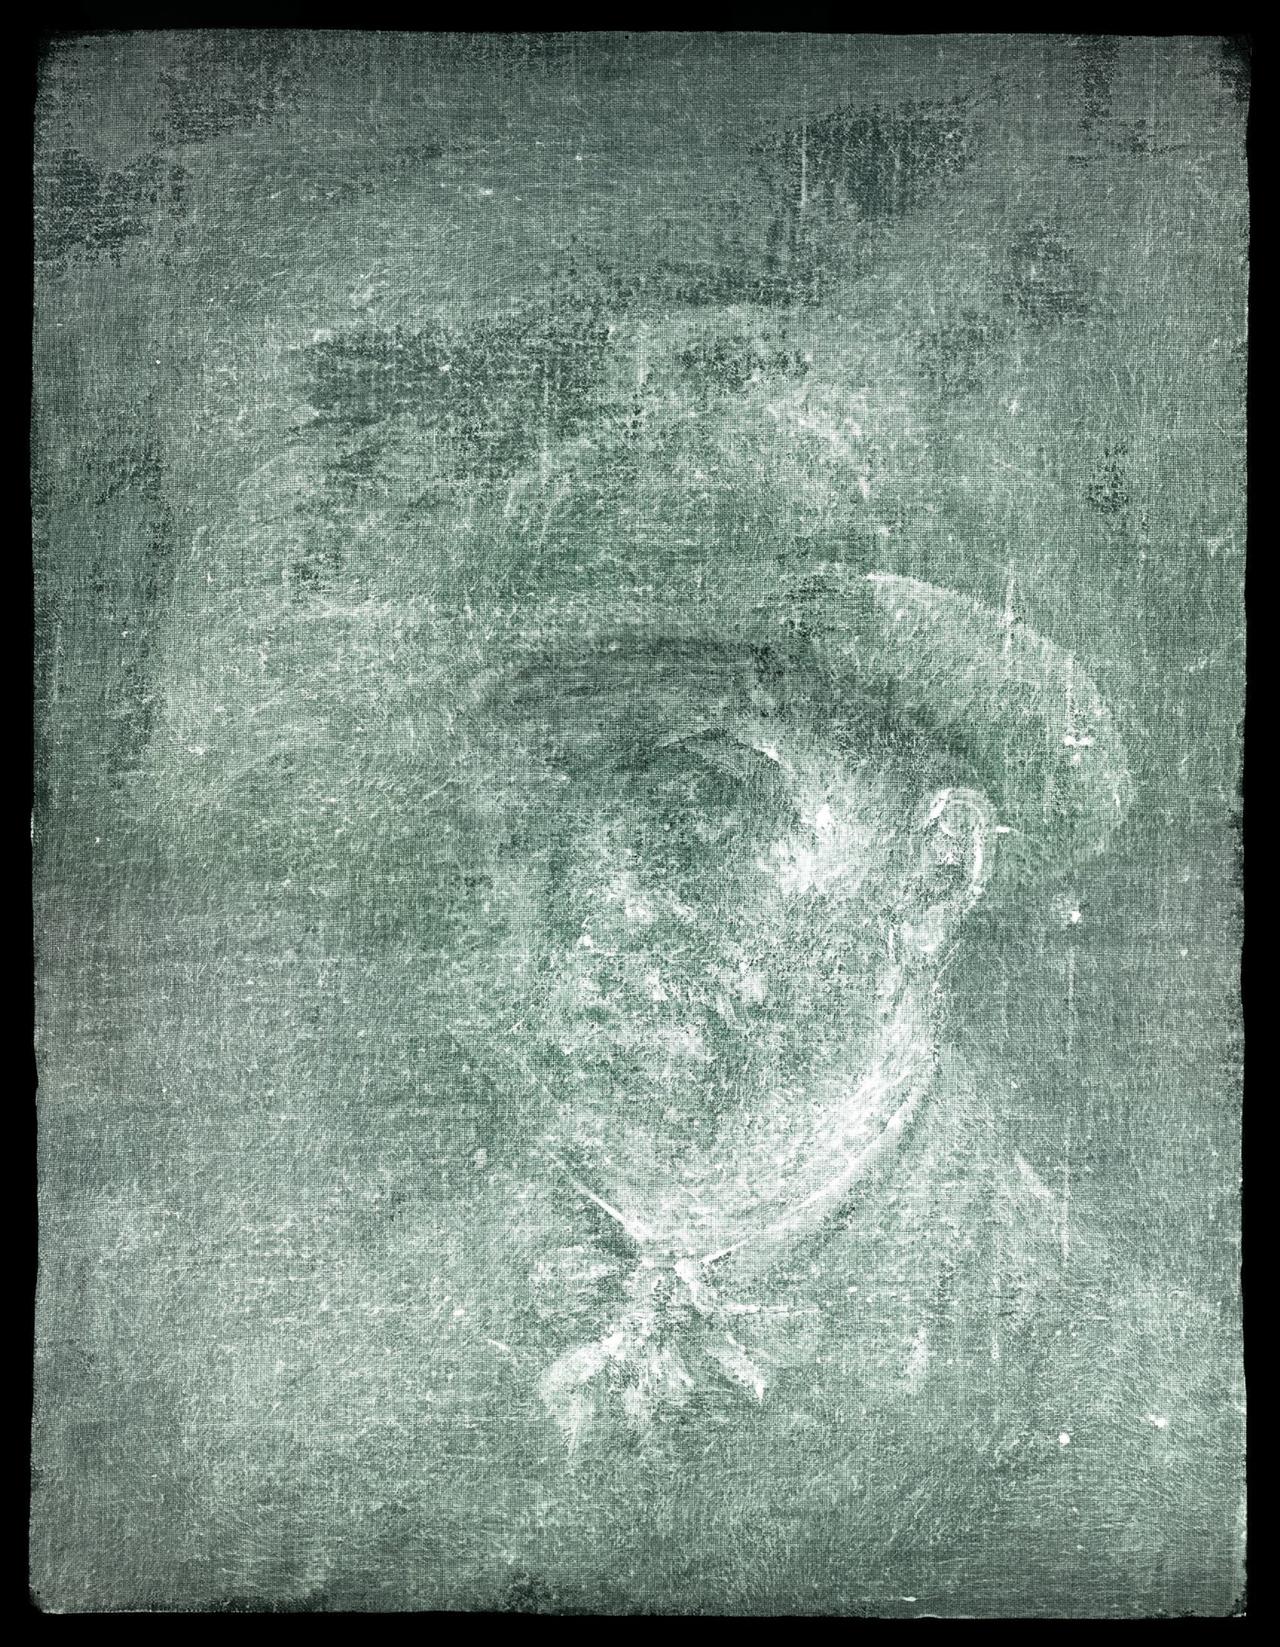 Großbritannien, London: Dieses von den National Galleries of Scotland herausgegebene Röntgenbild zeigt Vincent Van Gogh.